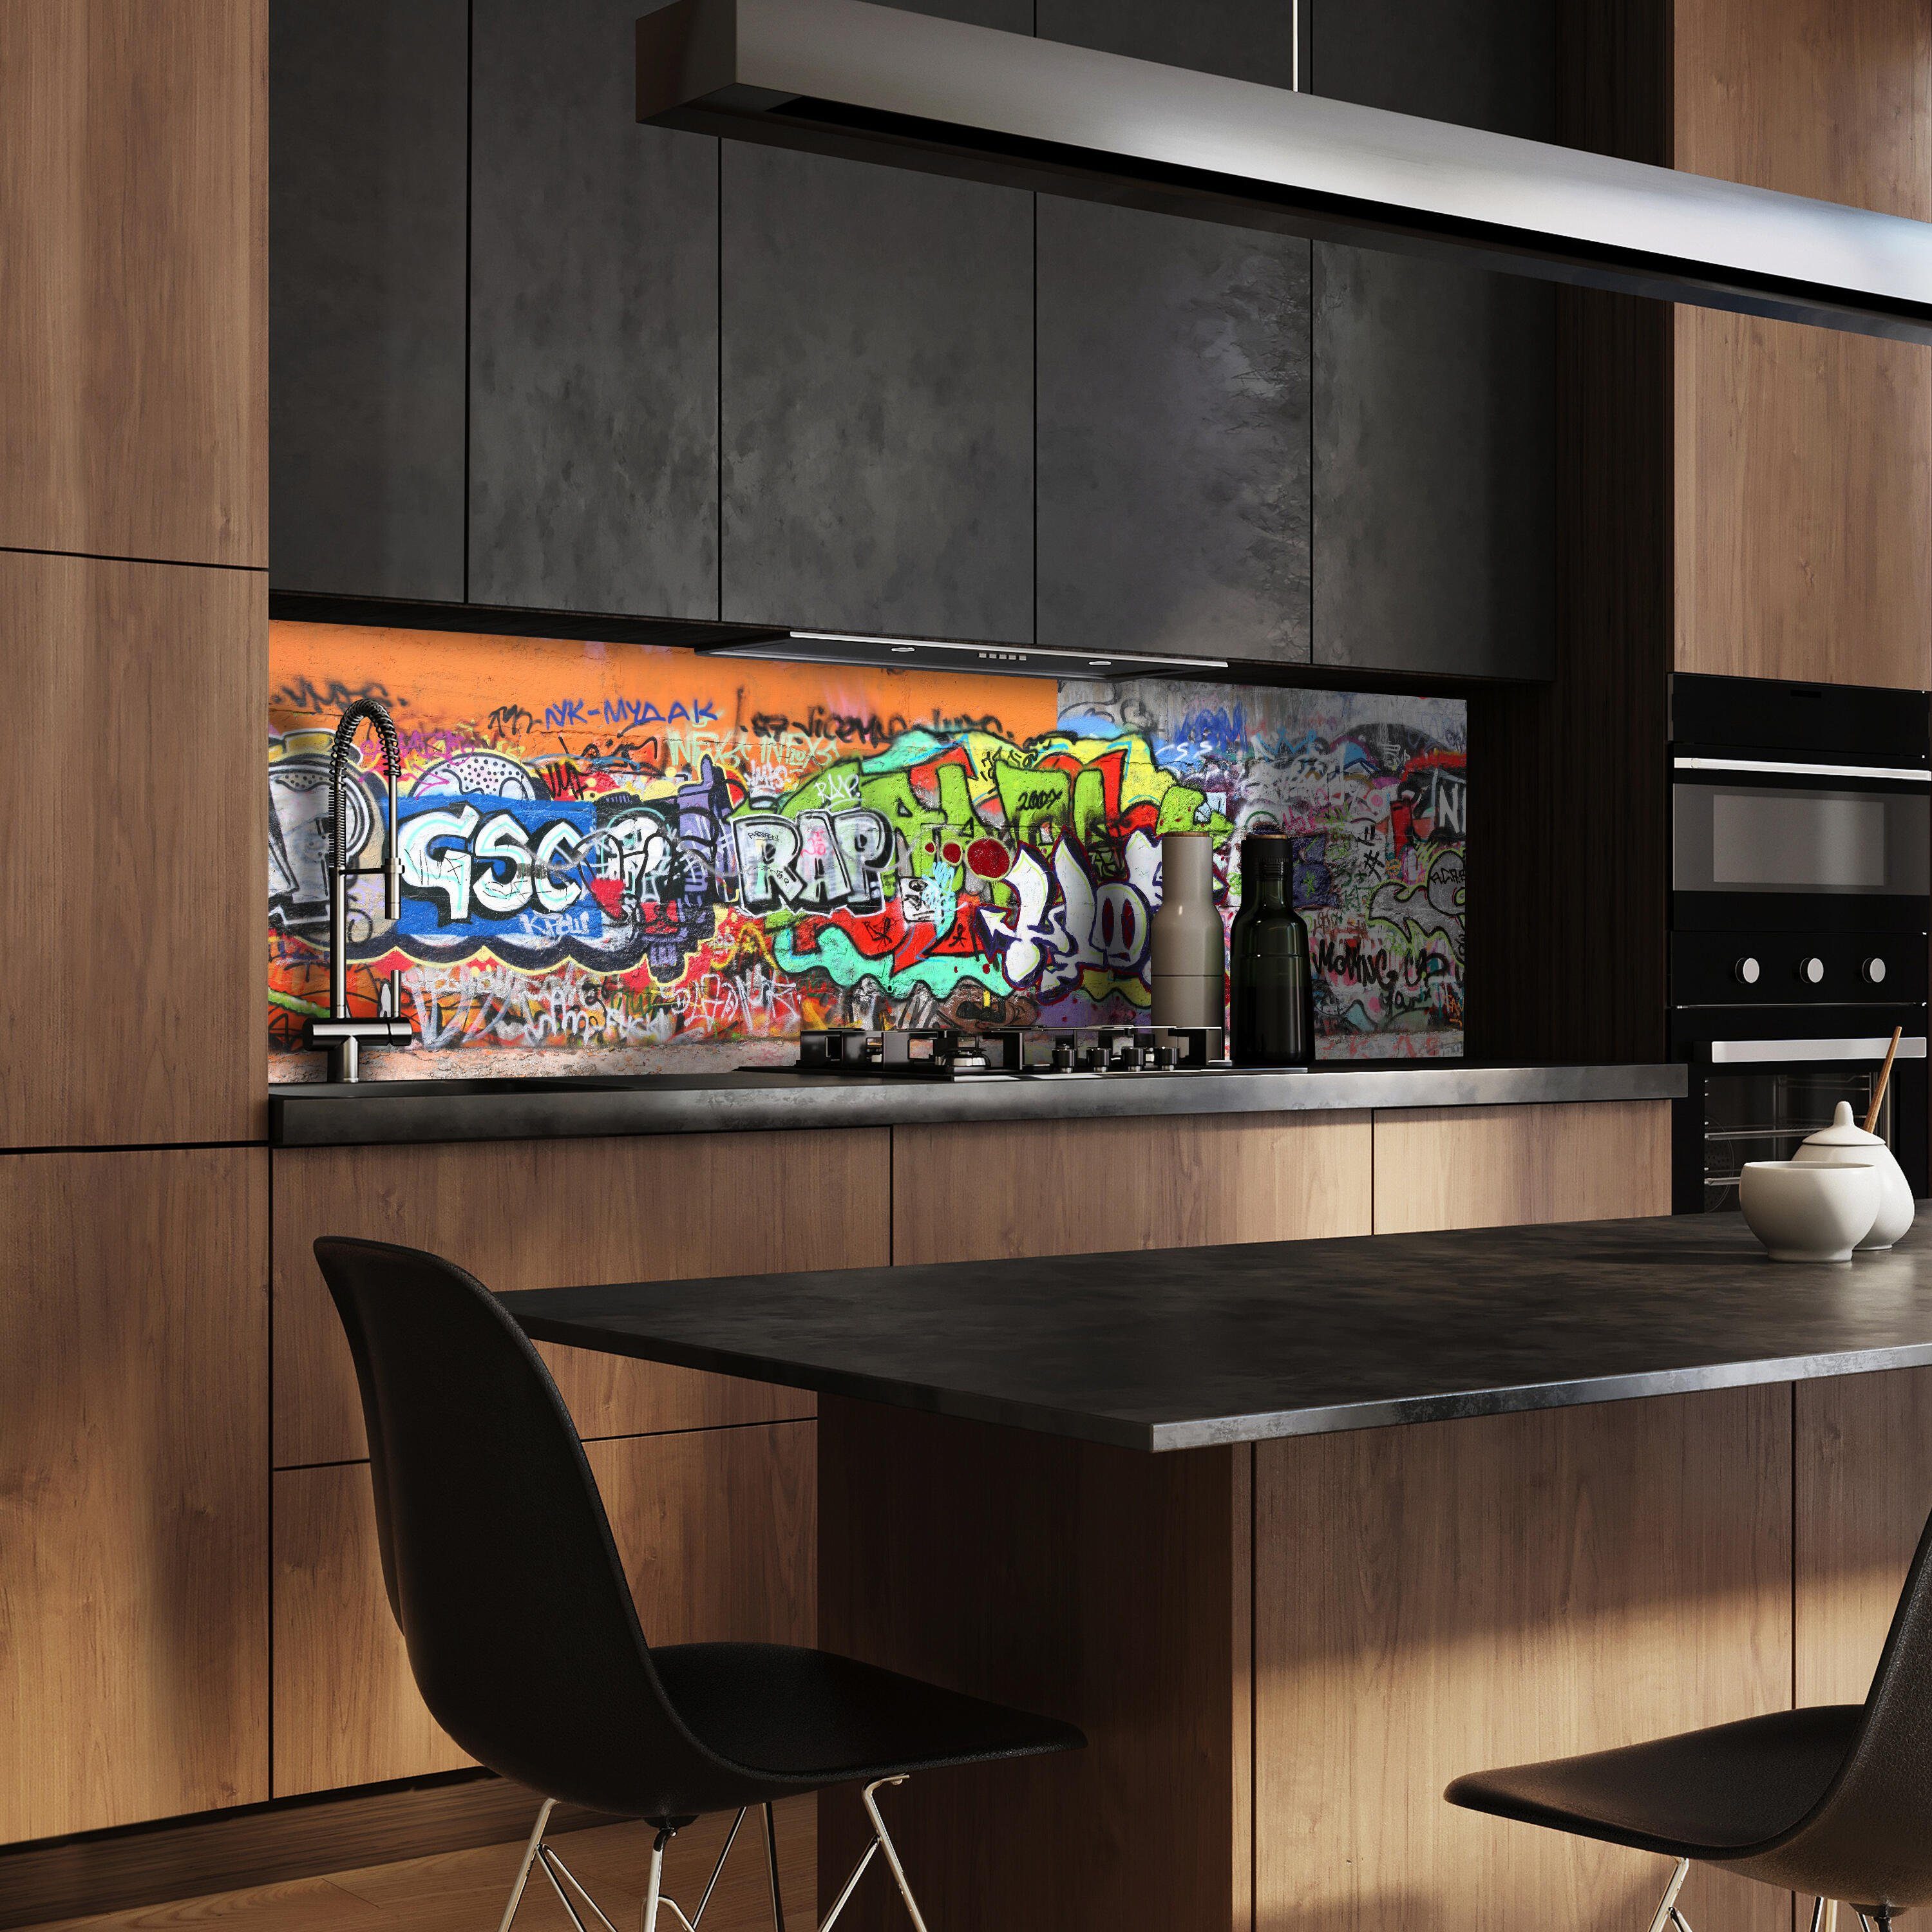 wandmotiv24 Küchenrückwand Graffiti 1, (1-tlg), Premium Hartschaum Nischenrückwand in versch. Größen